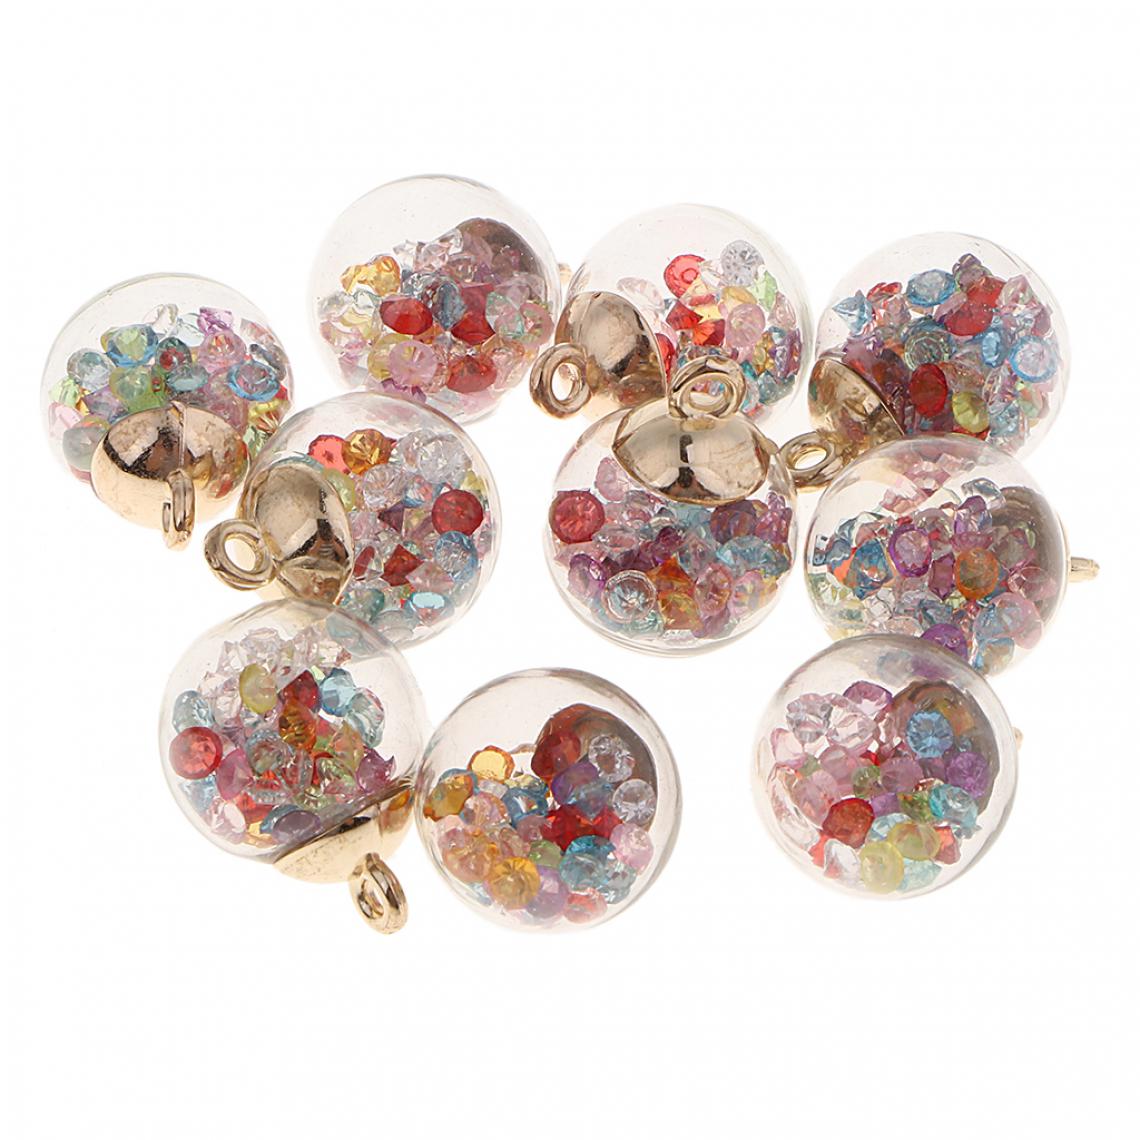 marque generique - 10pcs cristal verre boule charmes brillant strass bijoux pendentif royalblue - Perles